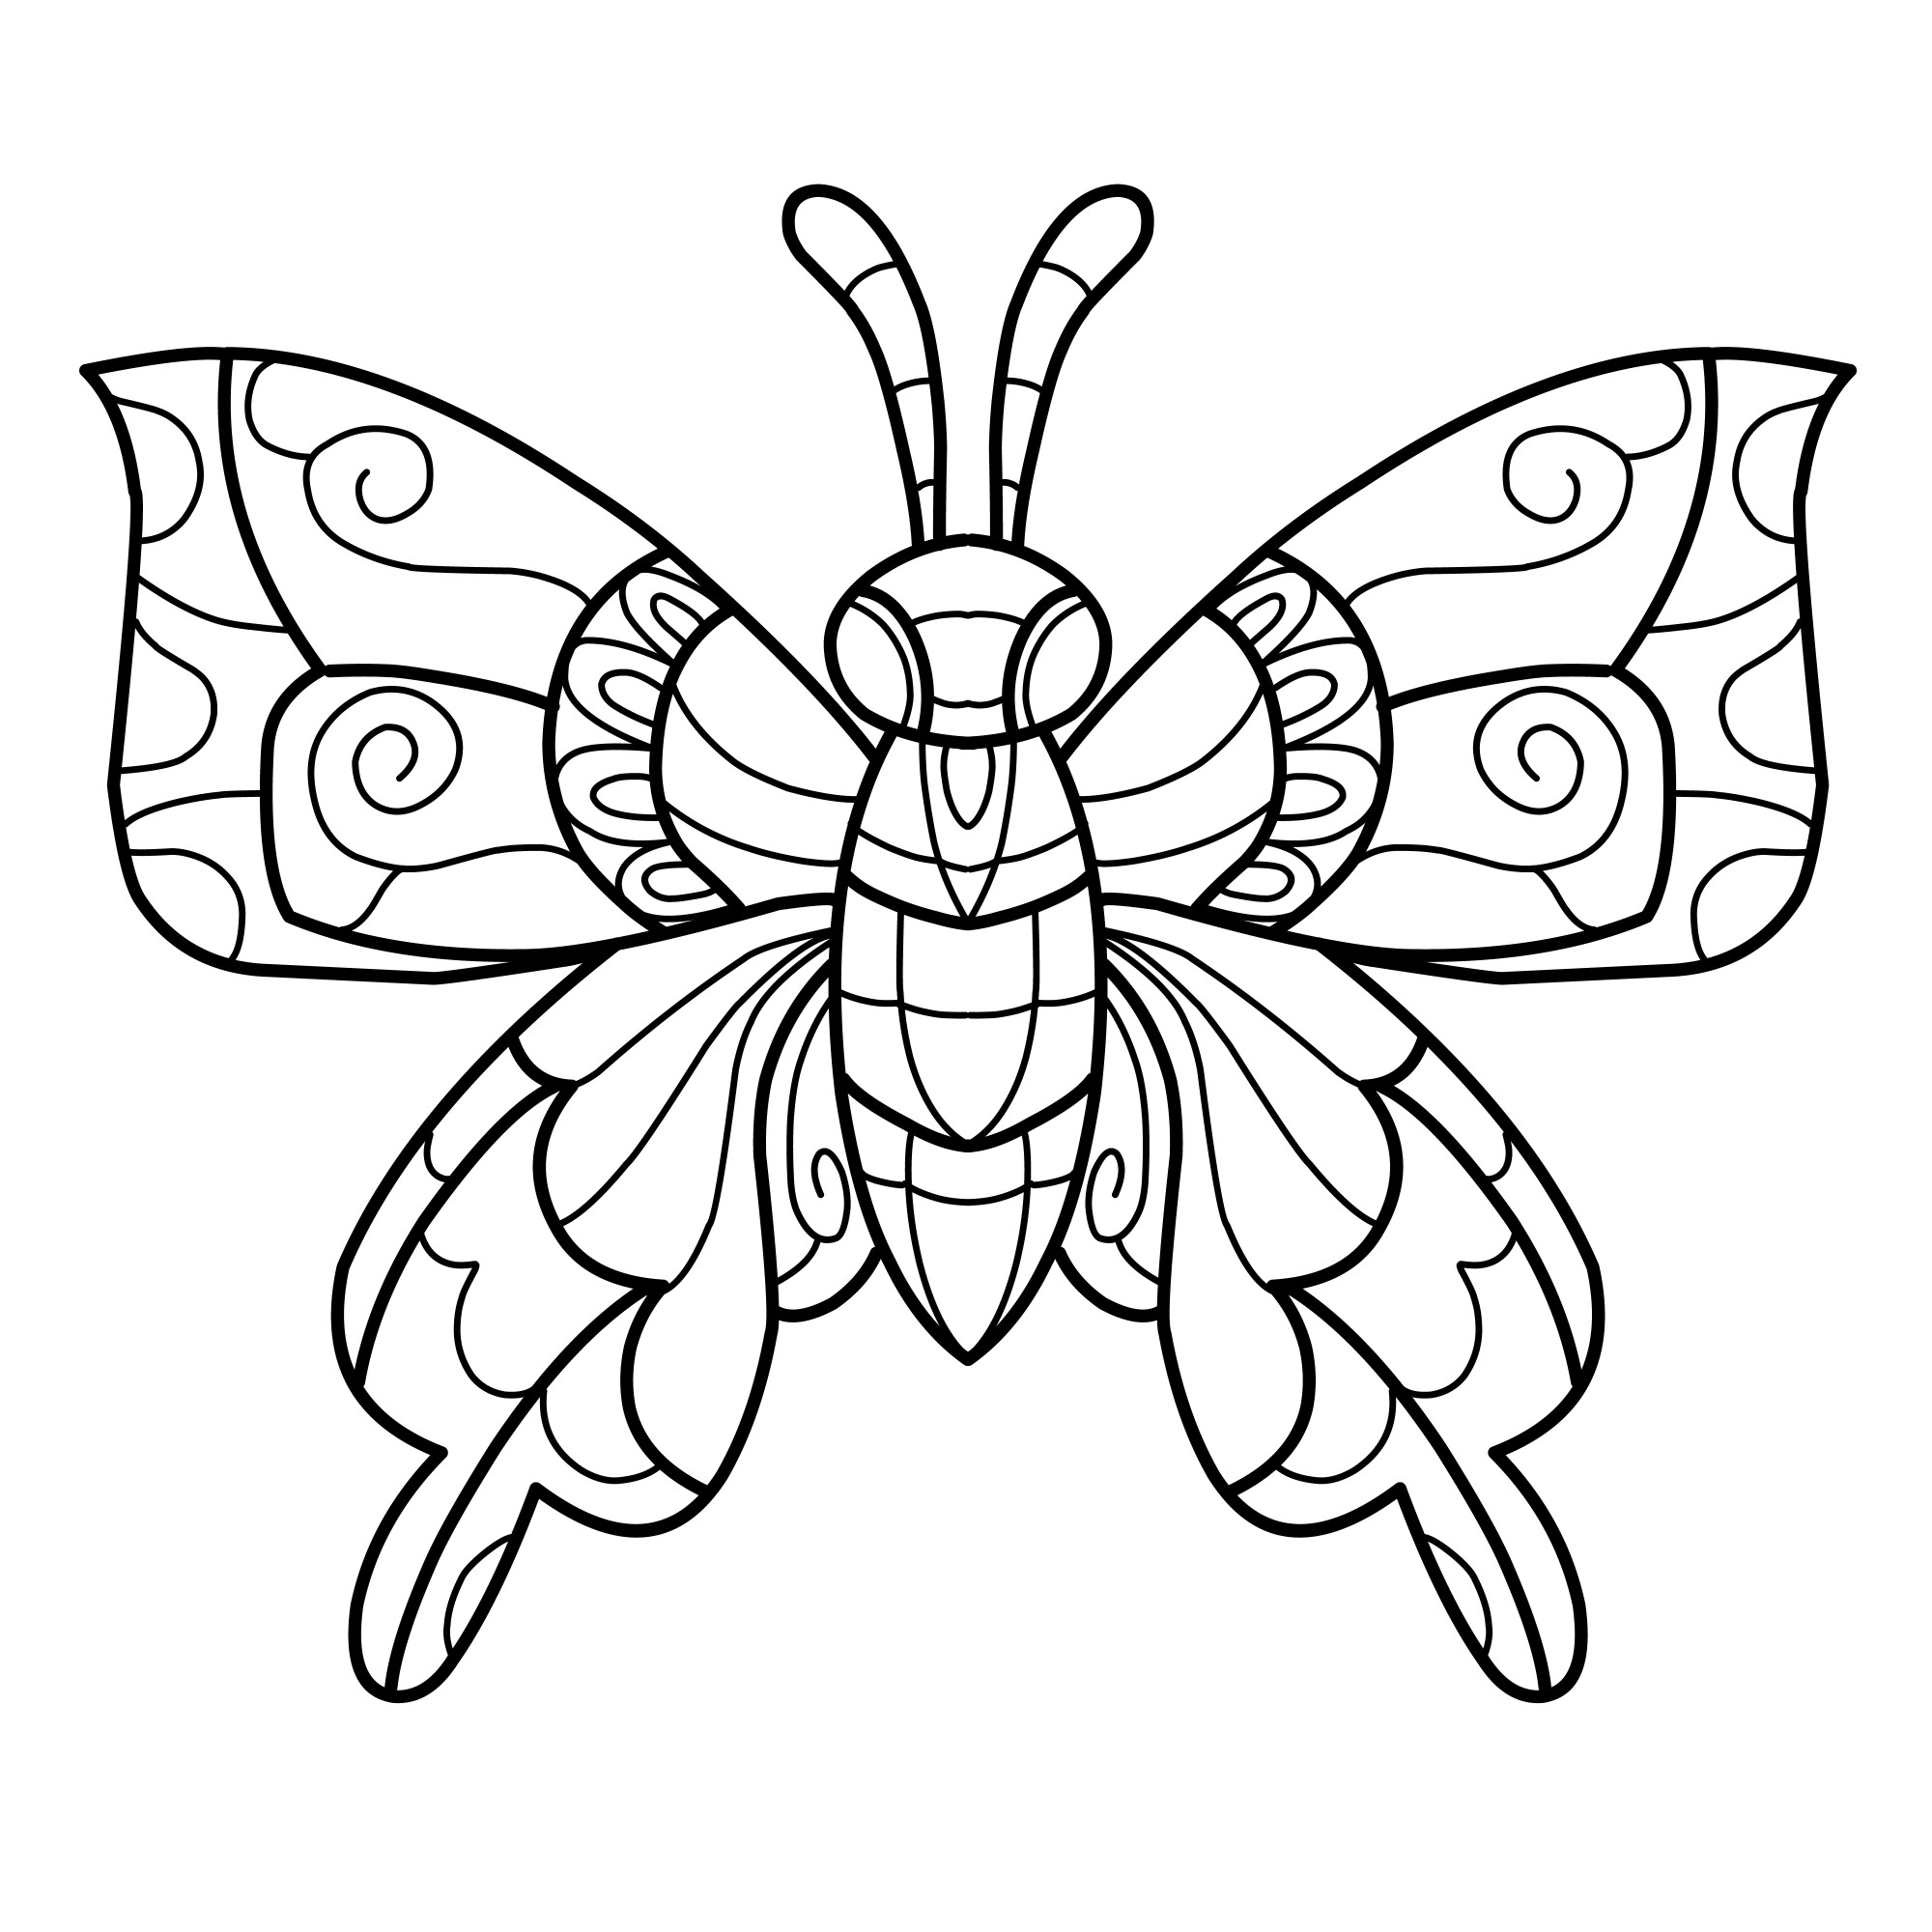 Раскраска для детей: антистресс бабочка с расправленными крыльями